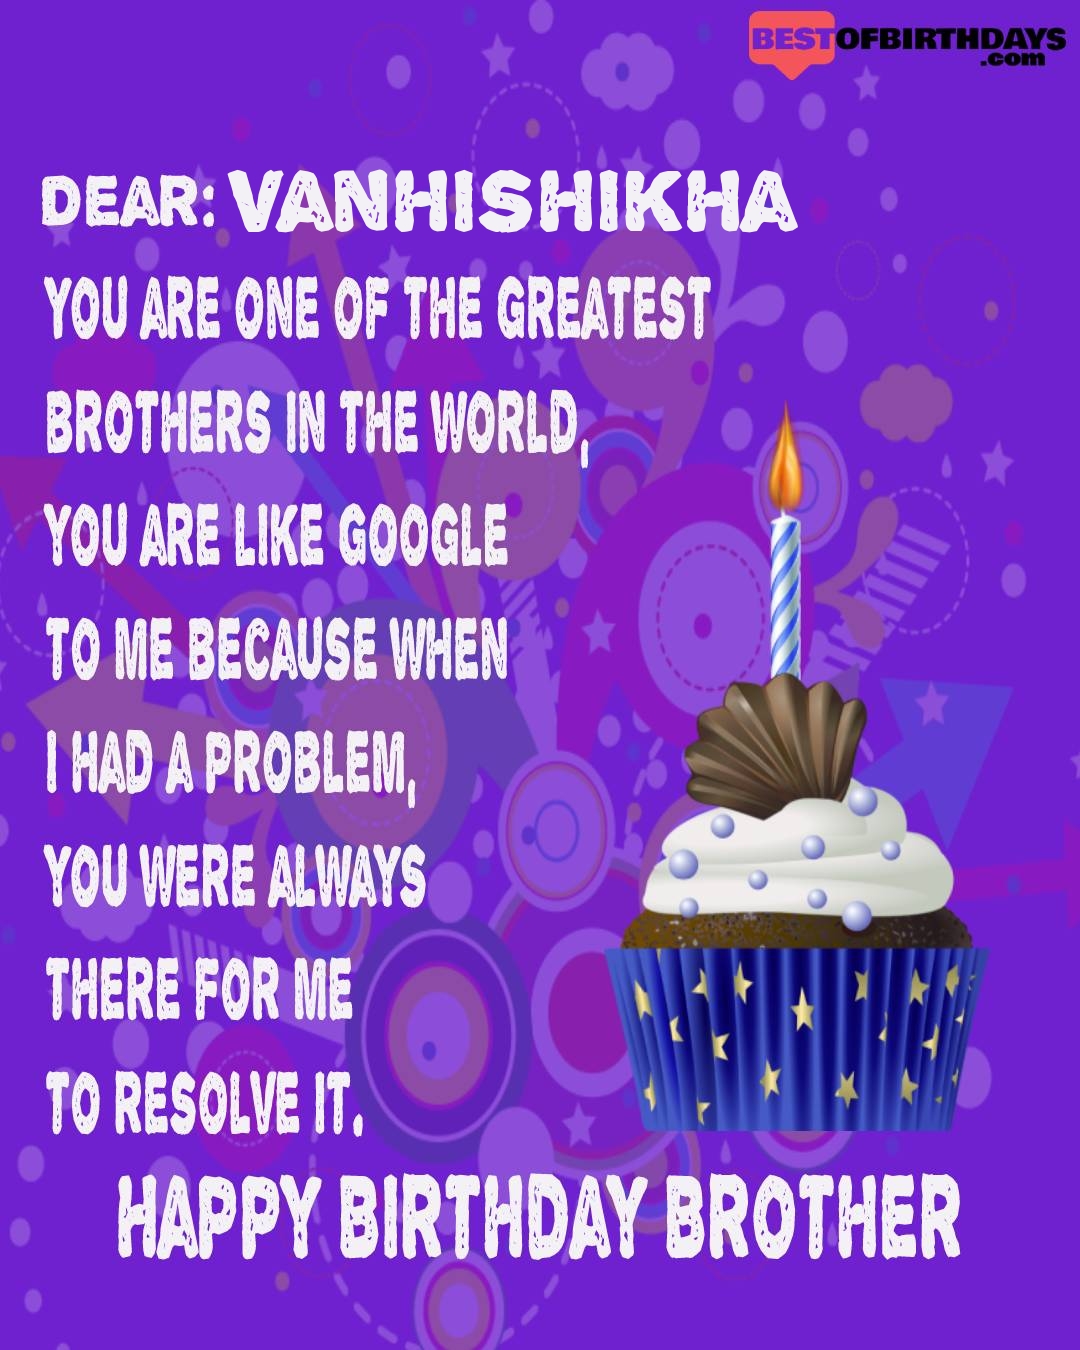 Happy birthday vanhishikha bhai brother bro